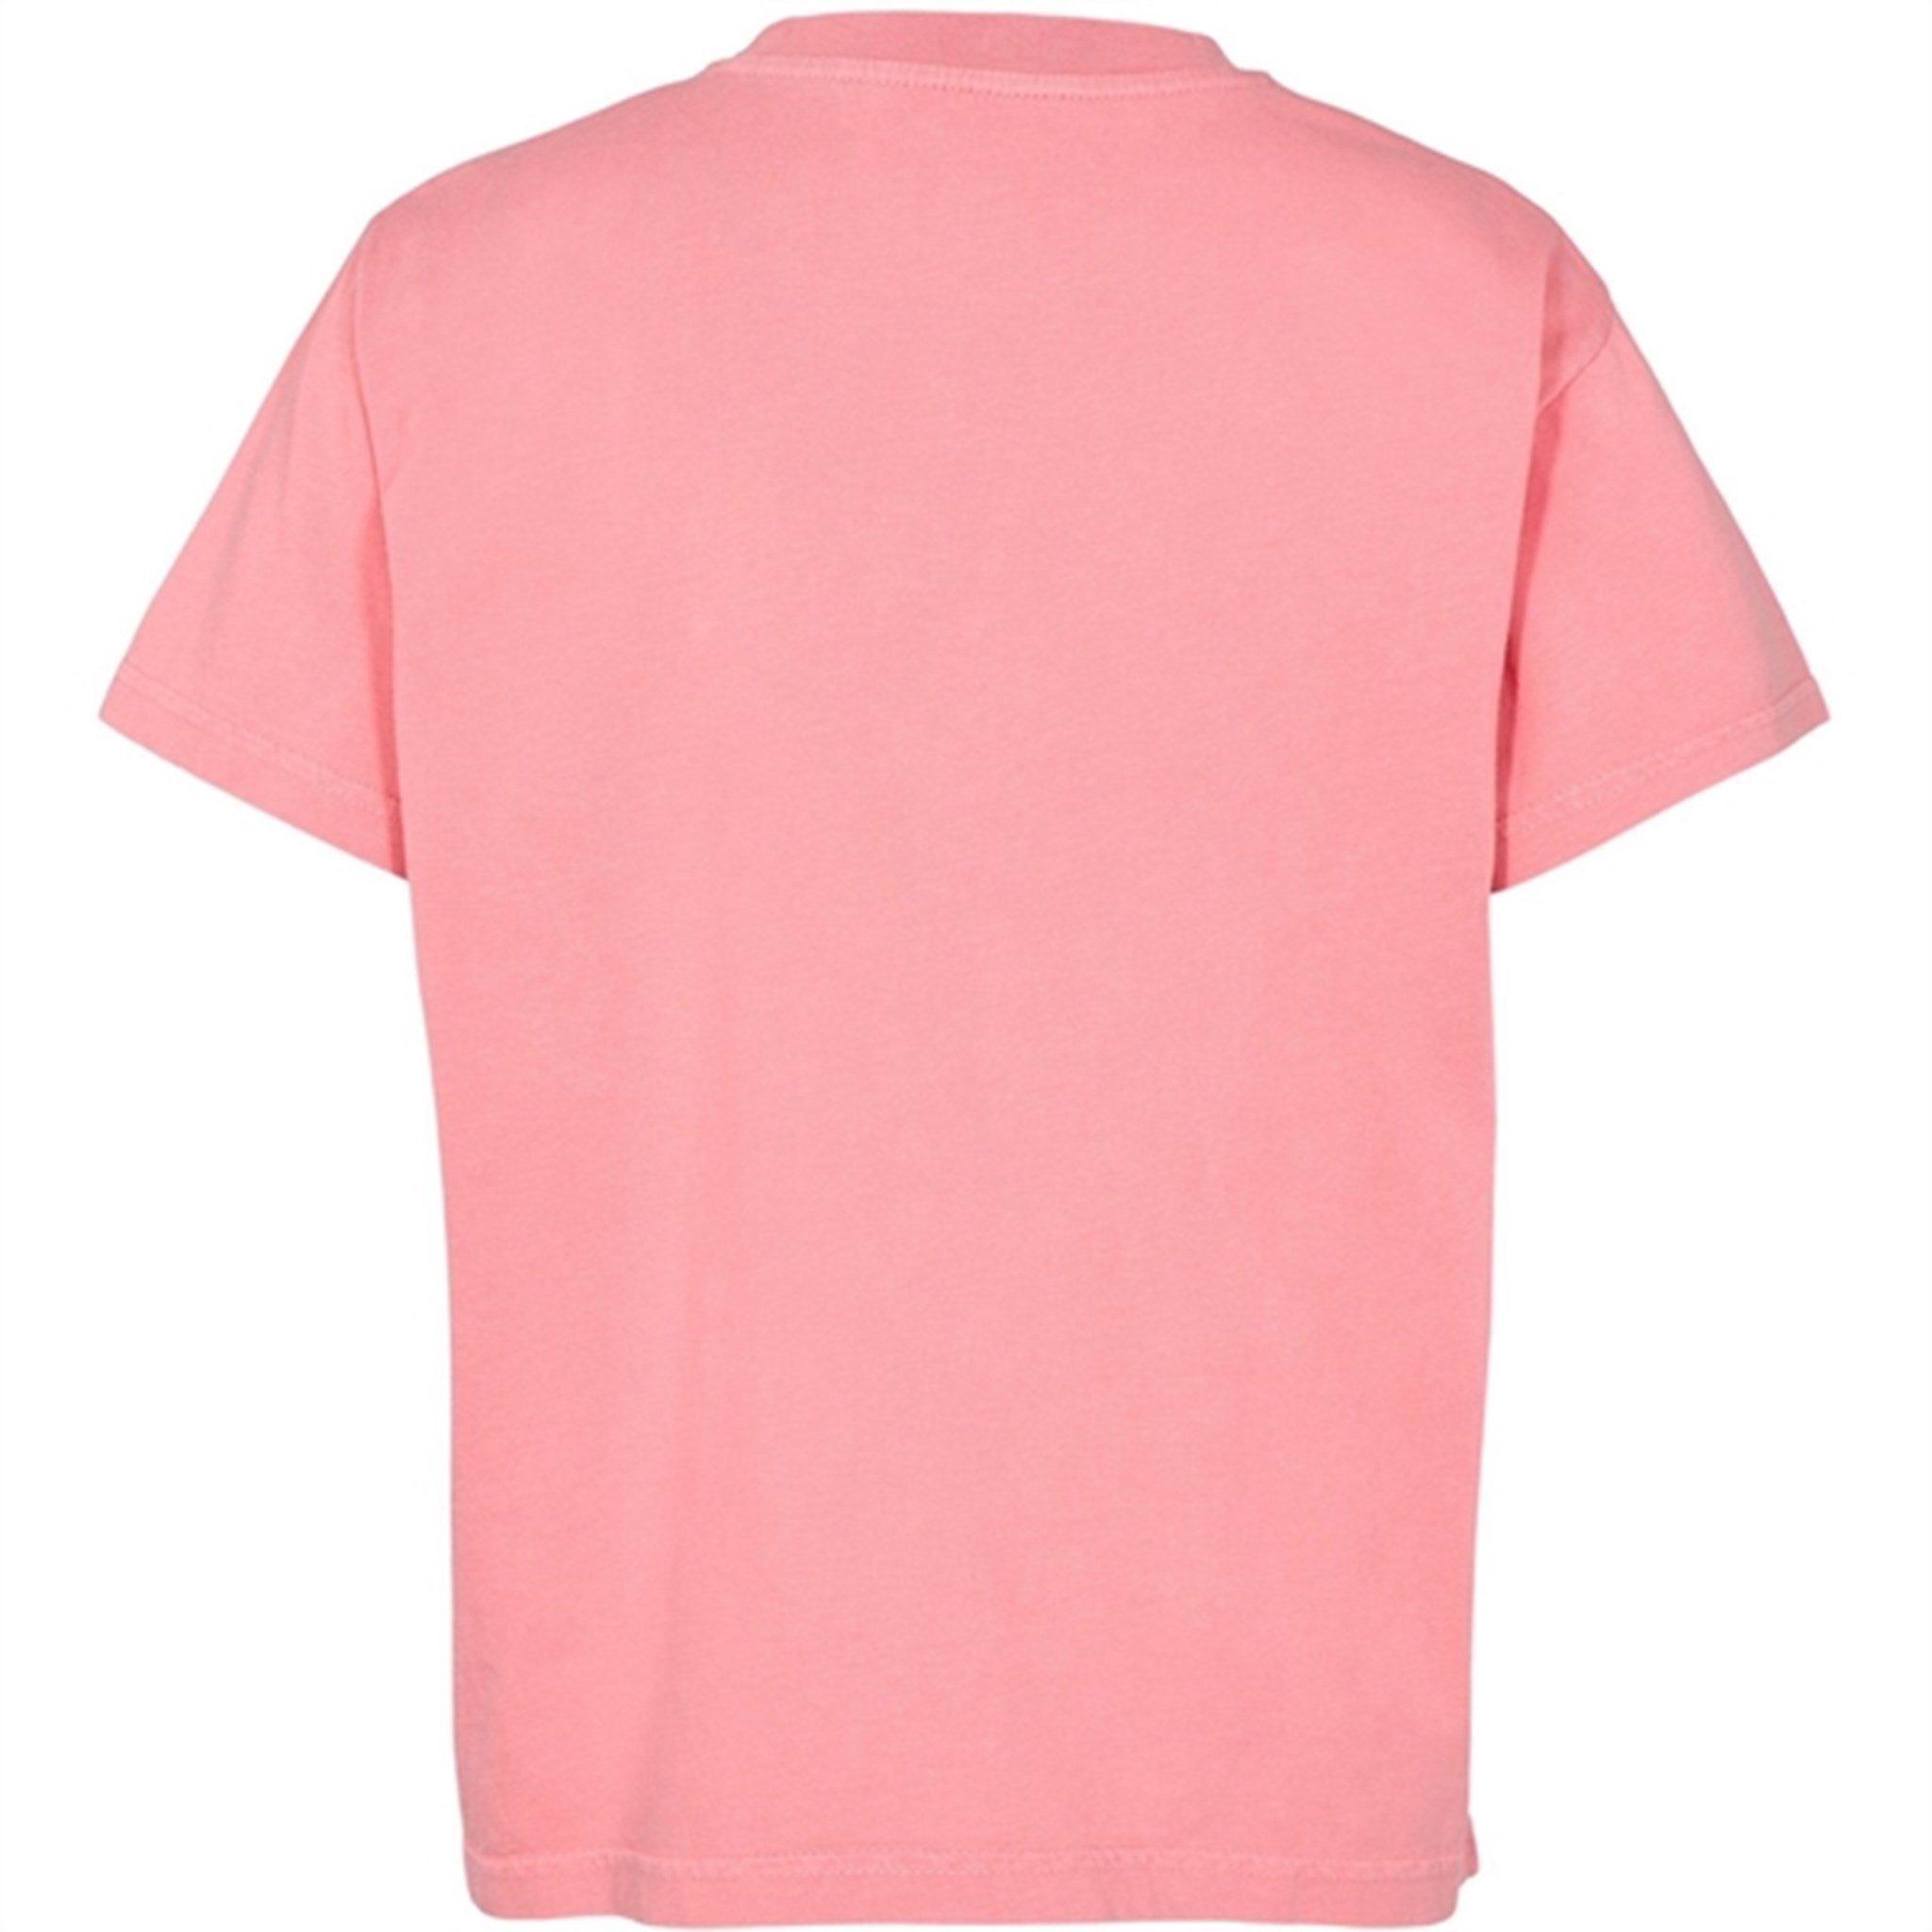 Sofie Schnoor Pink T-shirt 3